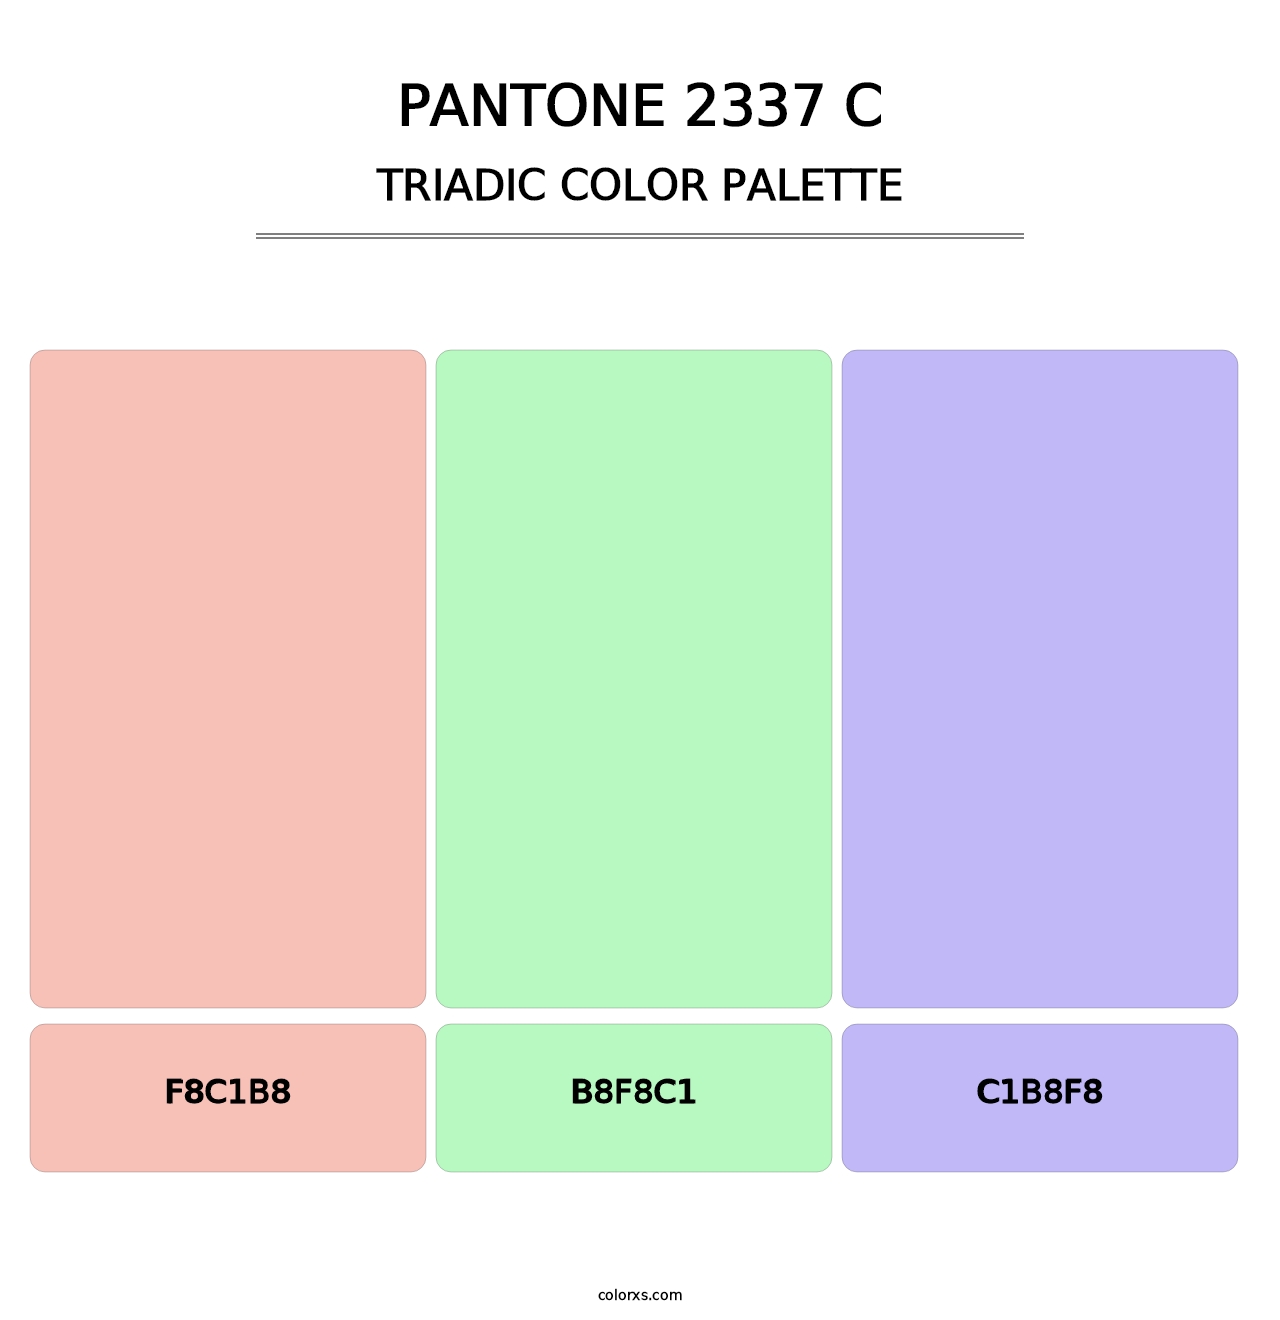 PANTONE 2337 C - Triadic Color Palette